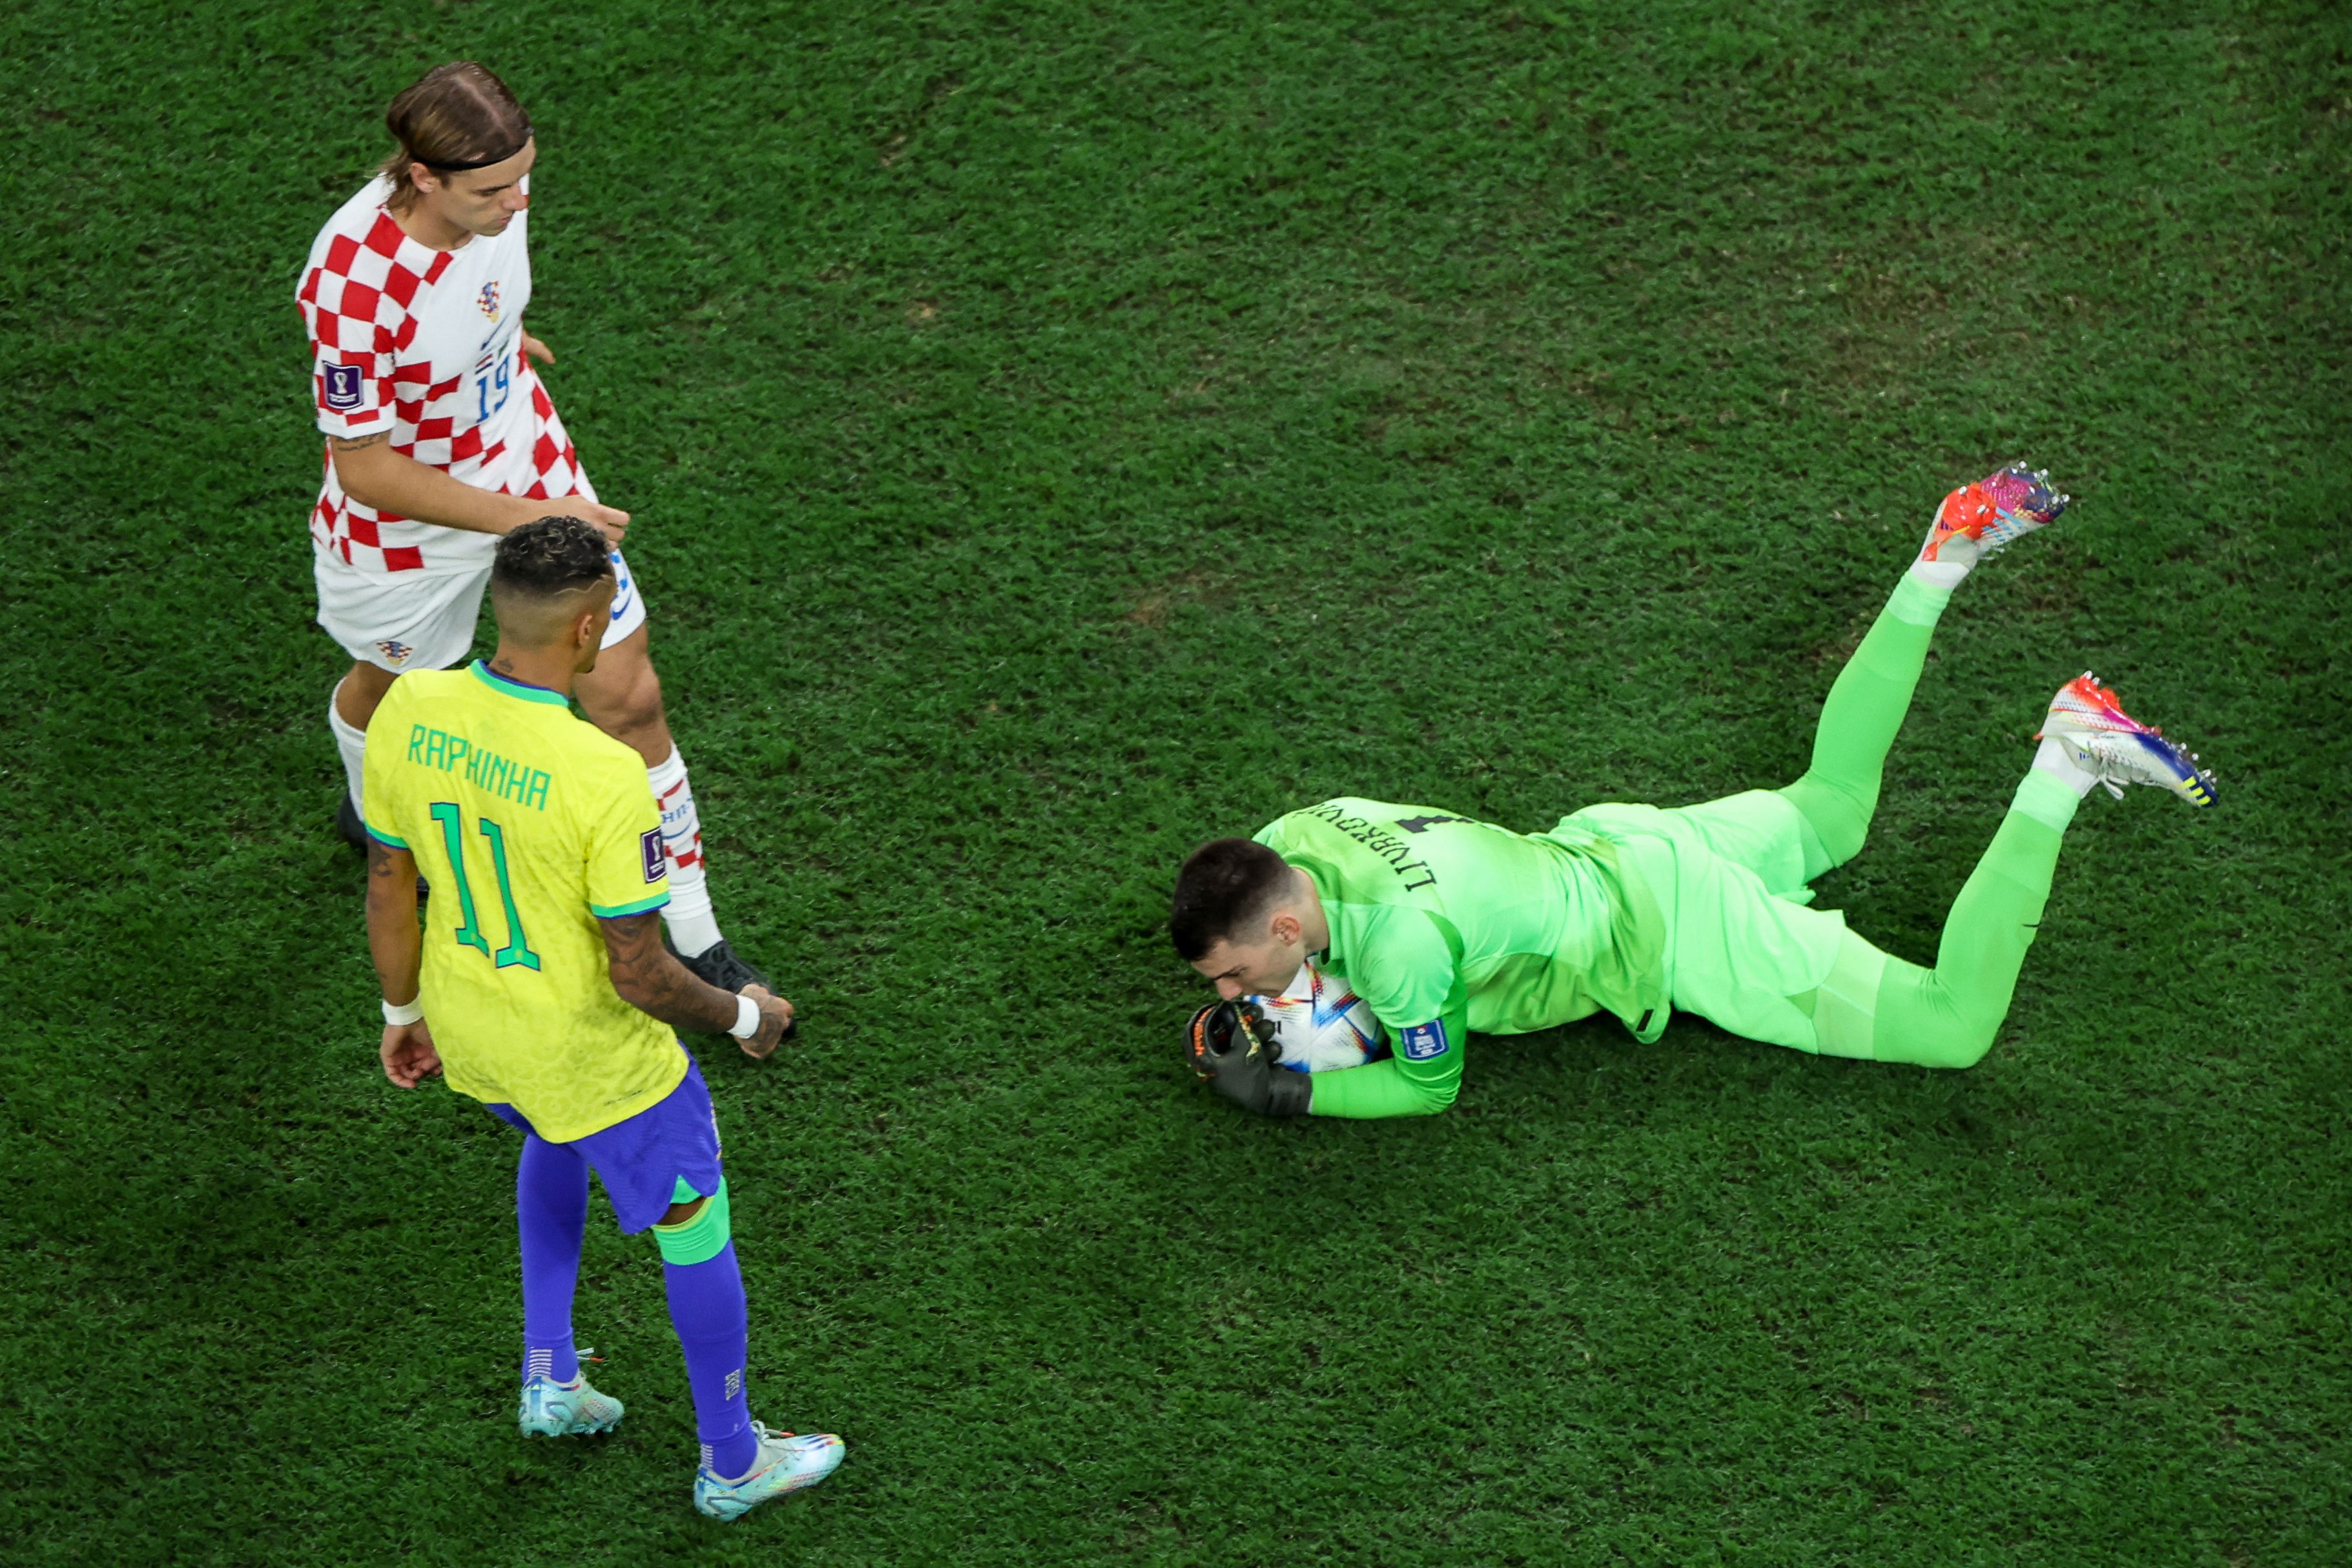 Heartbreak for Brazil as Croatia win on penalties to reach World Cup  semifinal